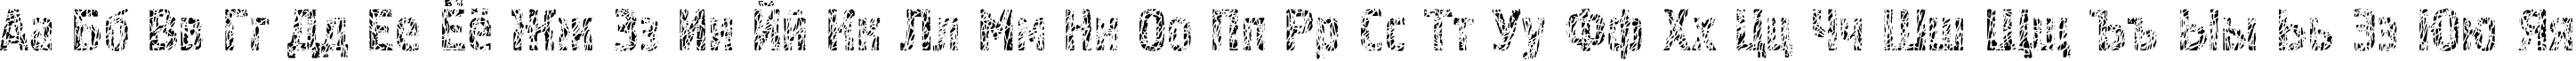 Пример написания русского алфавита шрифтом Pollock4C